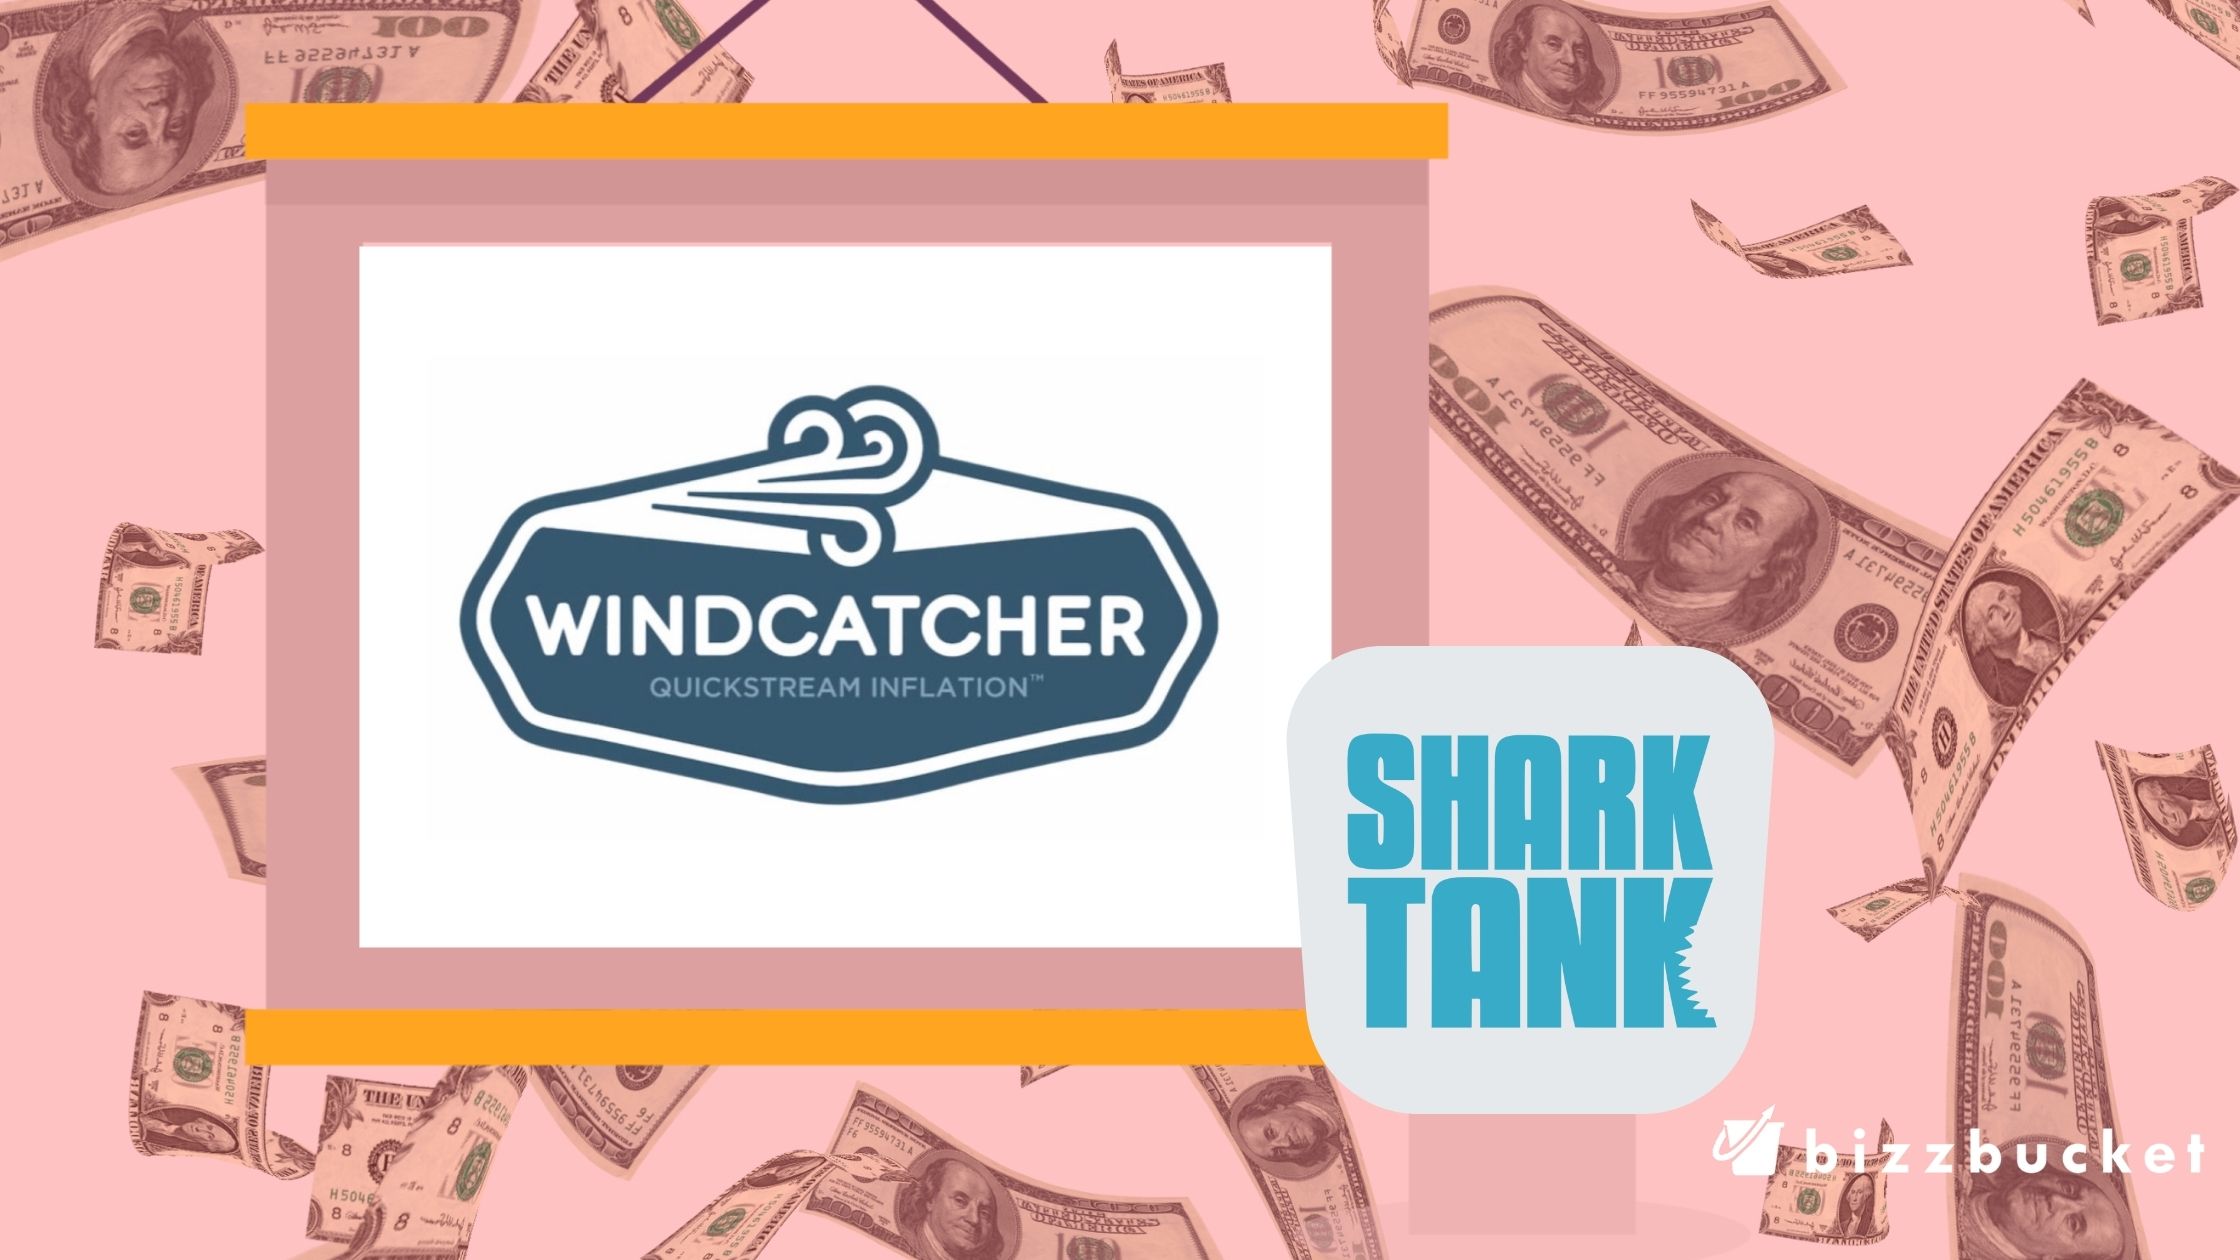 Windcatcher shark tank update